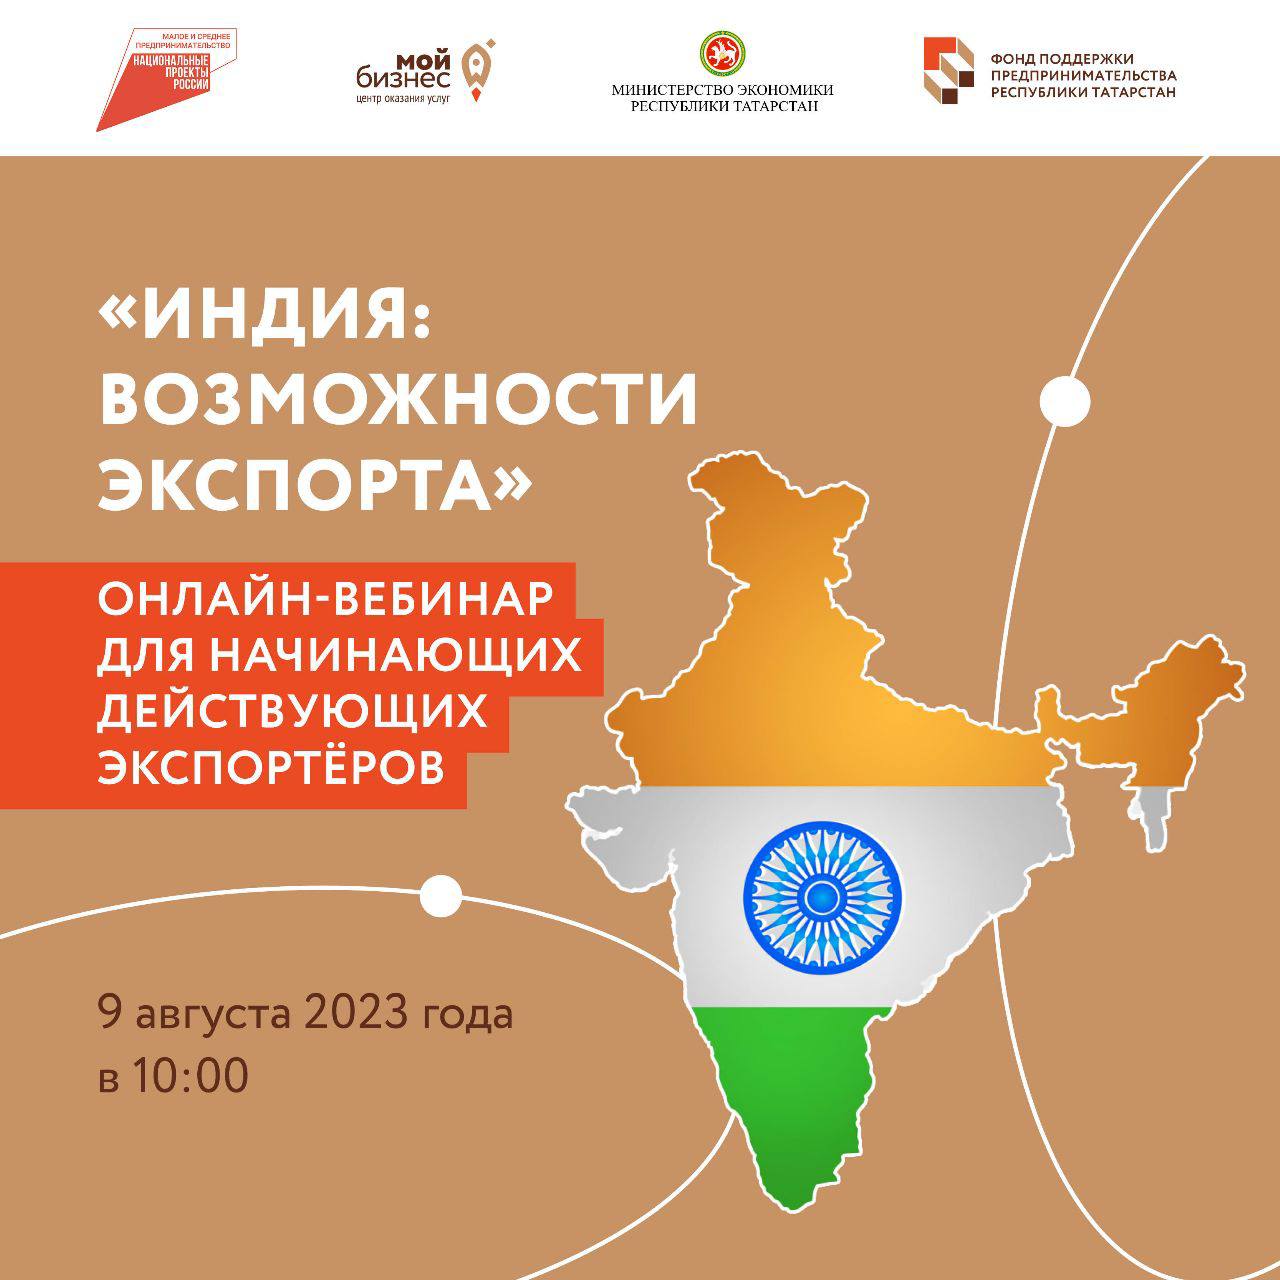 «Индия : возможности экспорта»: онлайн-вебинар для начинающих и действующих экспортёров.